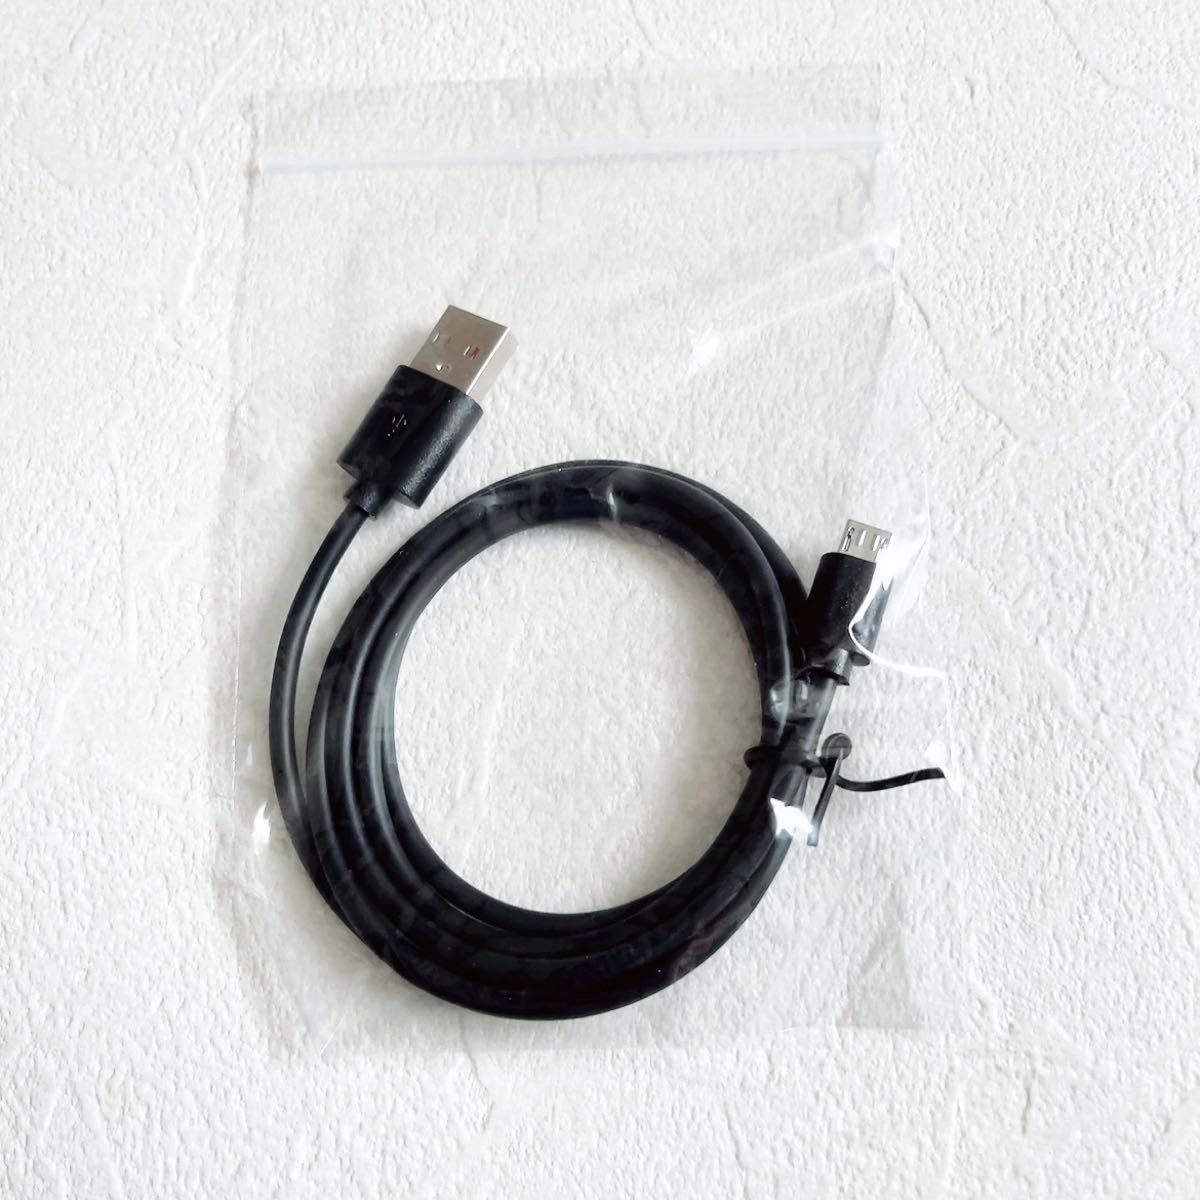 PS4用充電コード (1m /1本) USB充電ケーブル コントローラー用